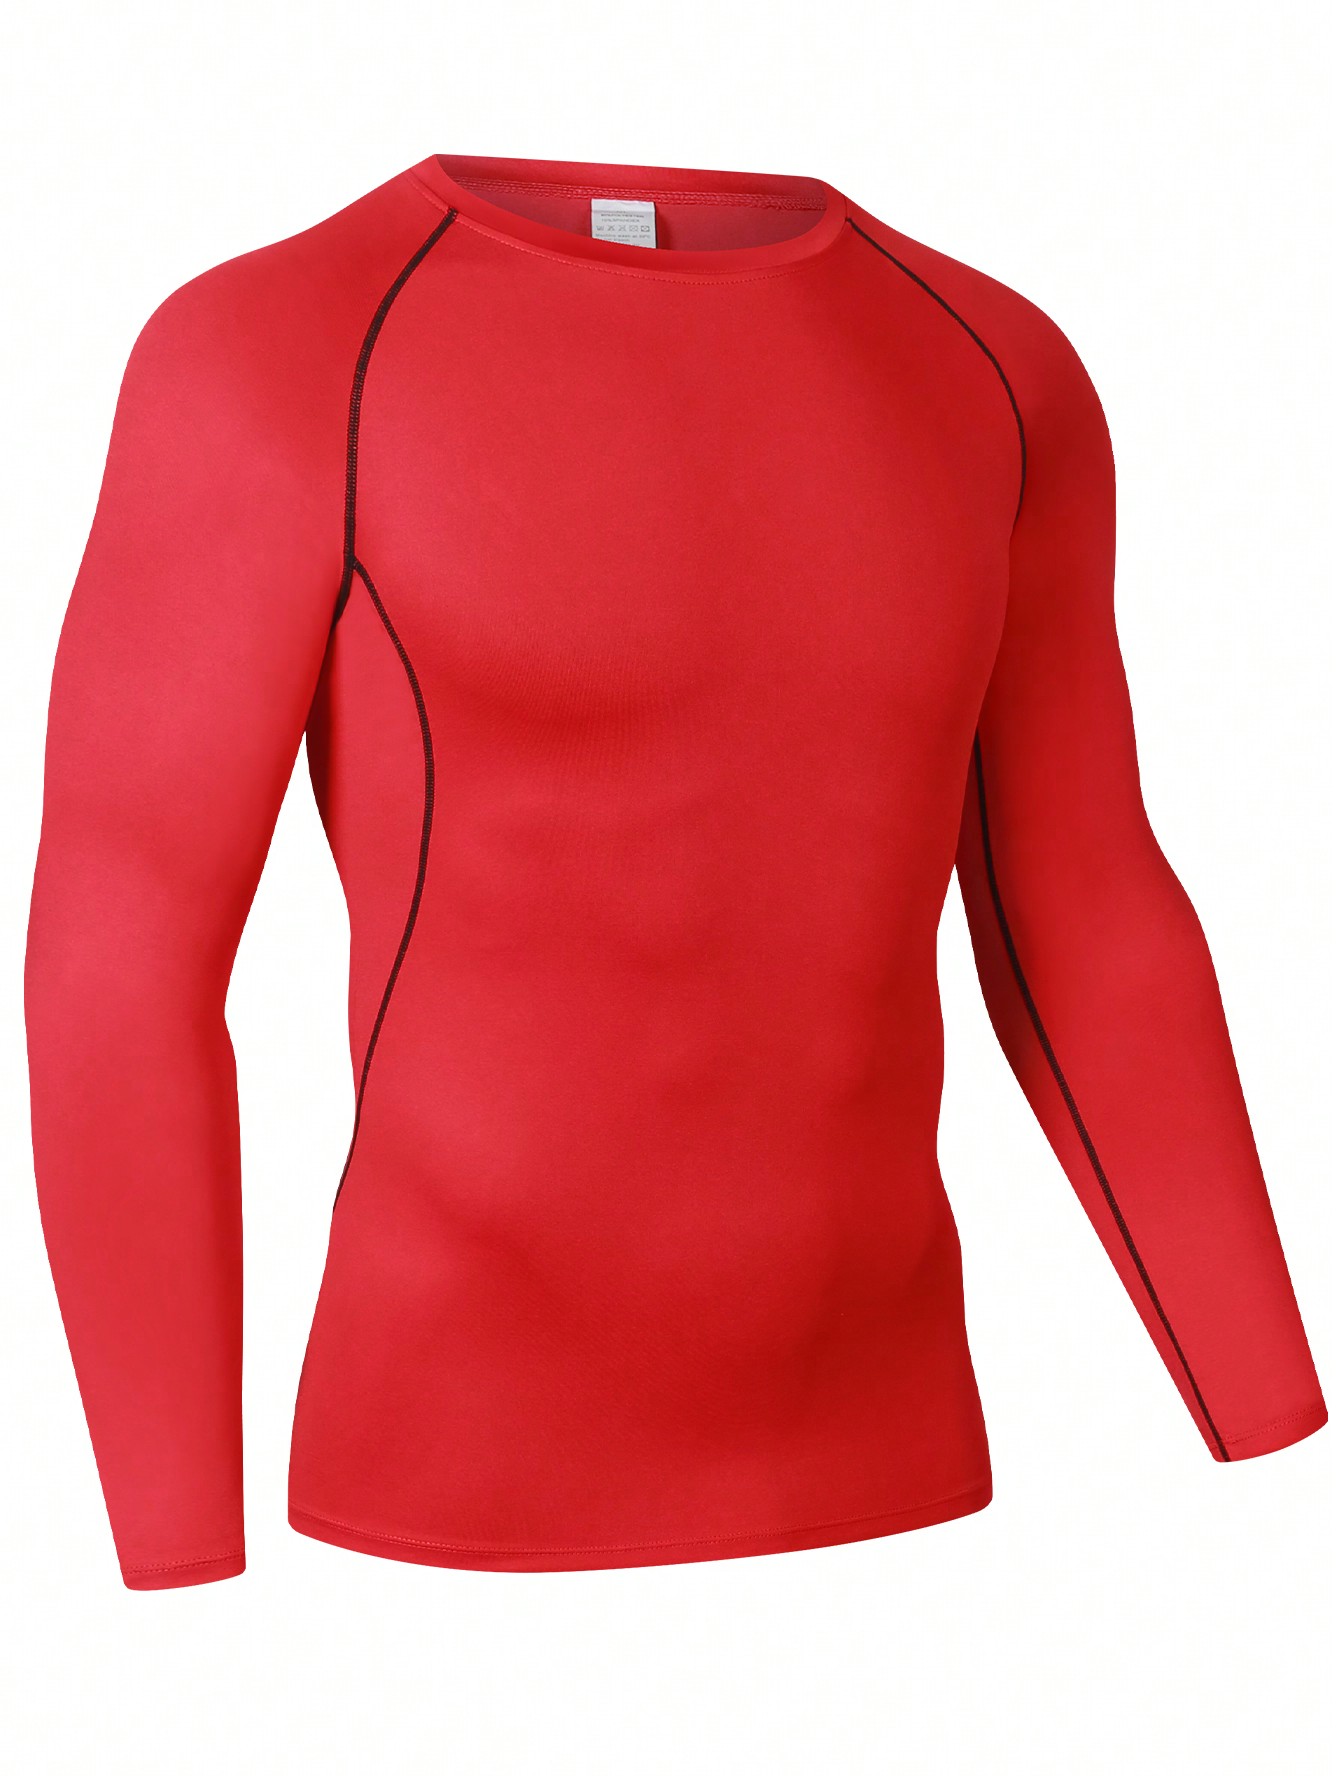 Мужская эластичная компрессионная рубашка для фитнеса с длинными рукавами, красный футболка мужская спортивная оверсайз рубашка с коротким рукавом для спортивного зала фитнеса бодибилдинга воркаута лето